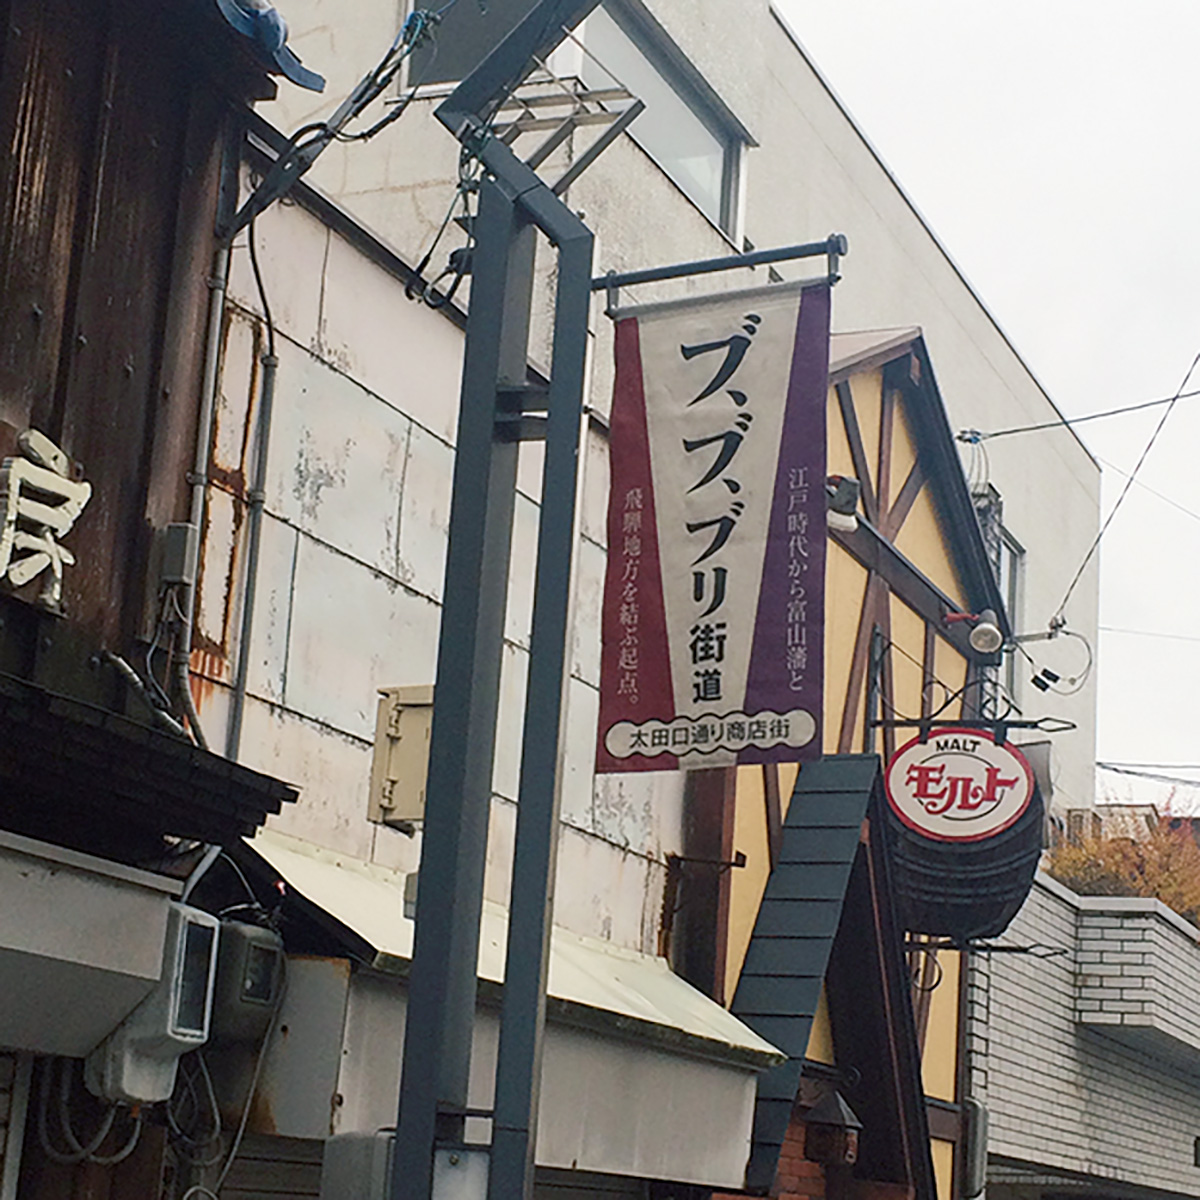 富山の通りを歩いているときに見つけたフラッグ。ぶり街道は富山で獲れた越中ぶりを運んだ旧飛騨街道を指す。